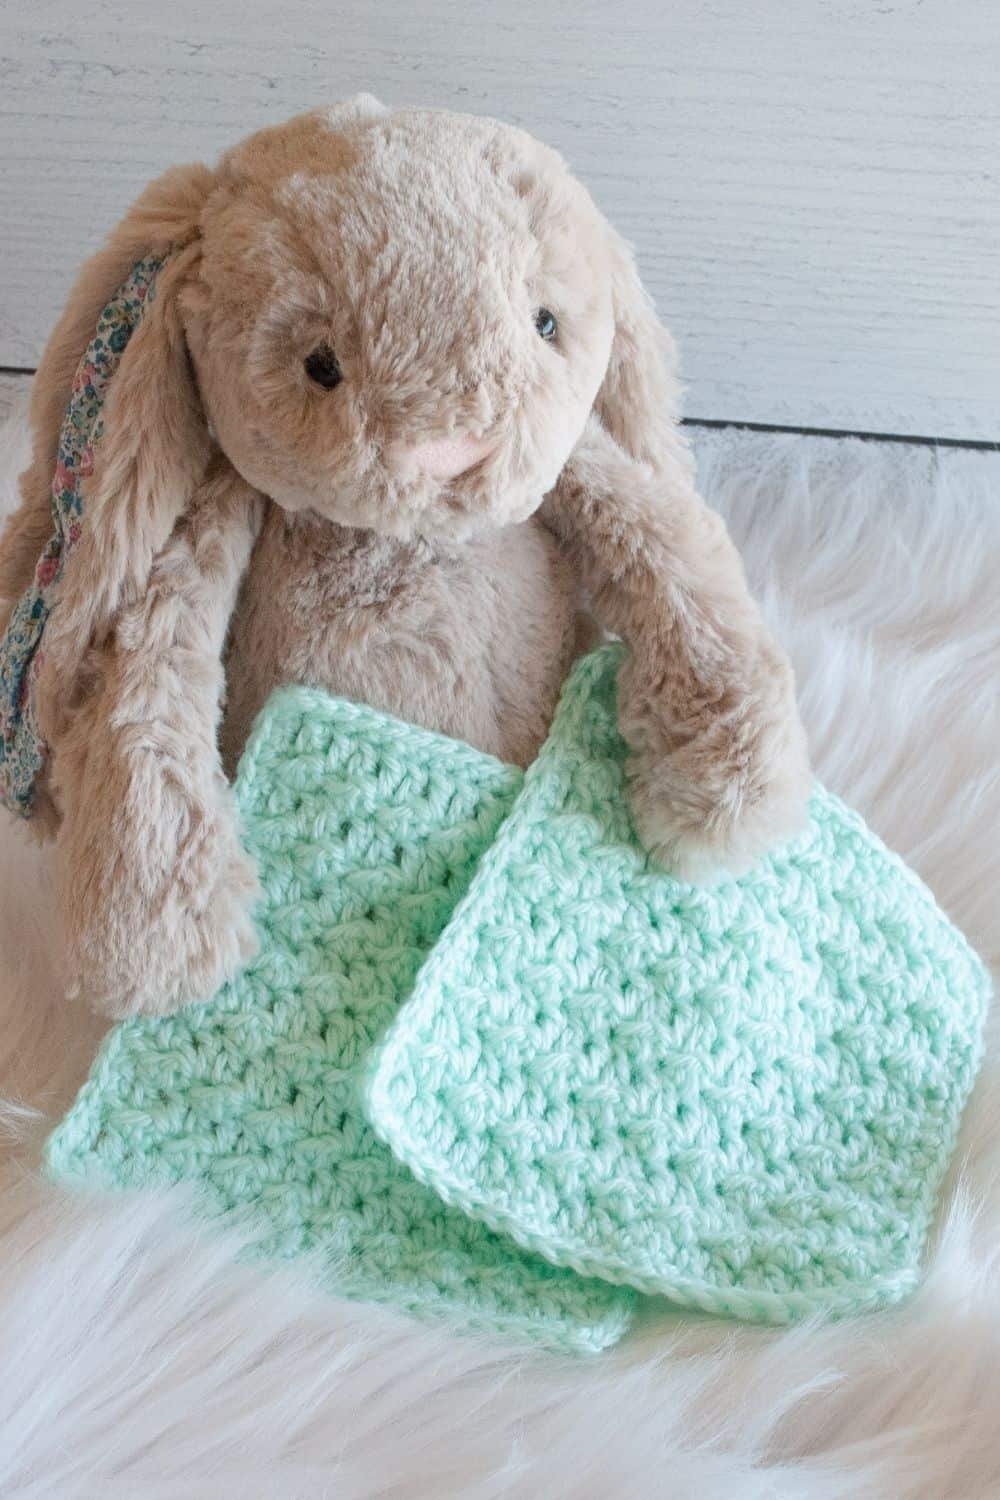 Crochet pattern for light green preemie baby NICU bonding square